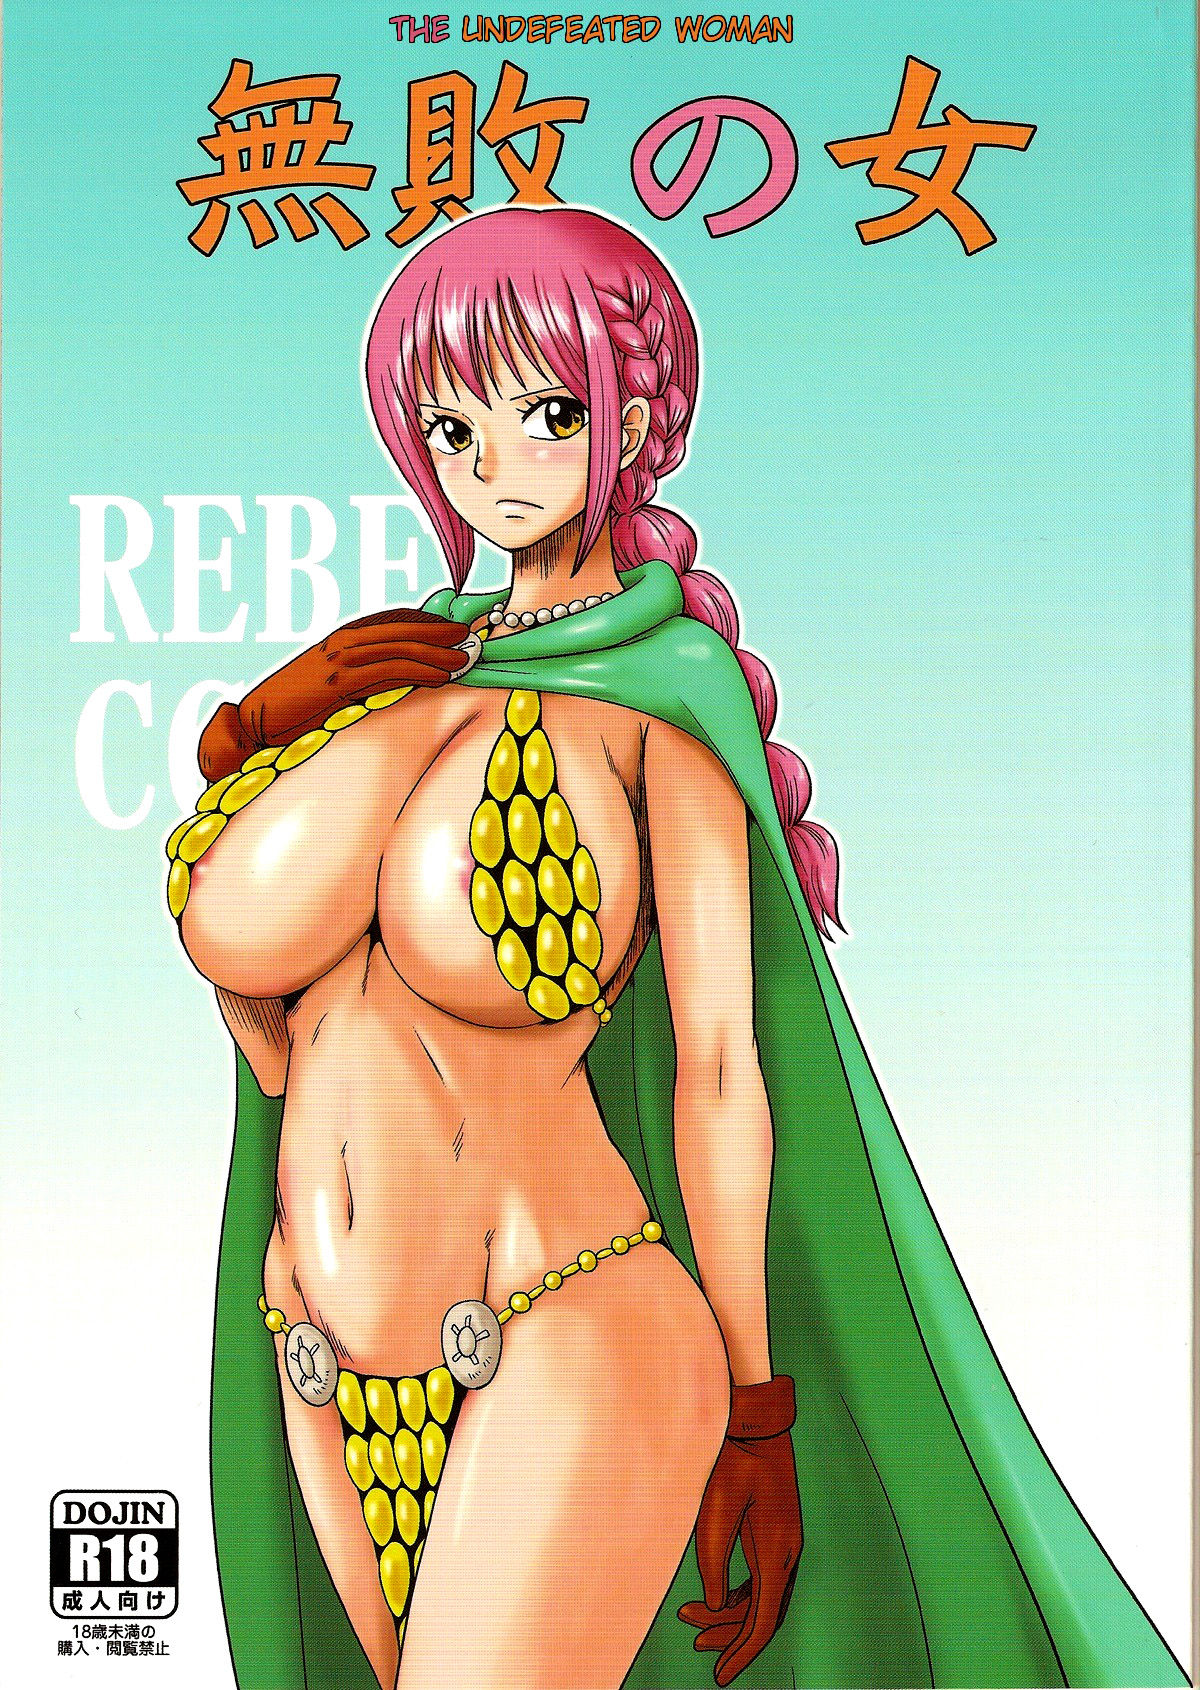 C85 Dashigara 100 Minpei Ichigo Muhai no Onna The Undefeated Woman One Piece English doujin 00